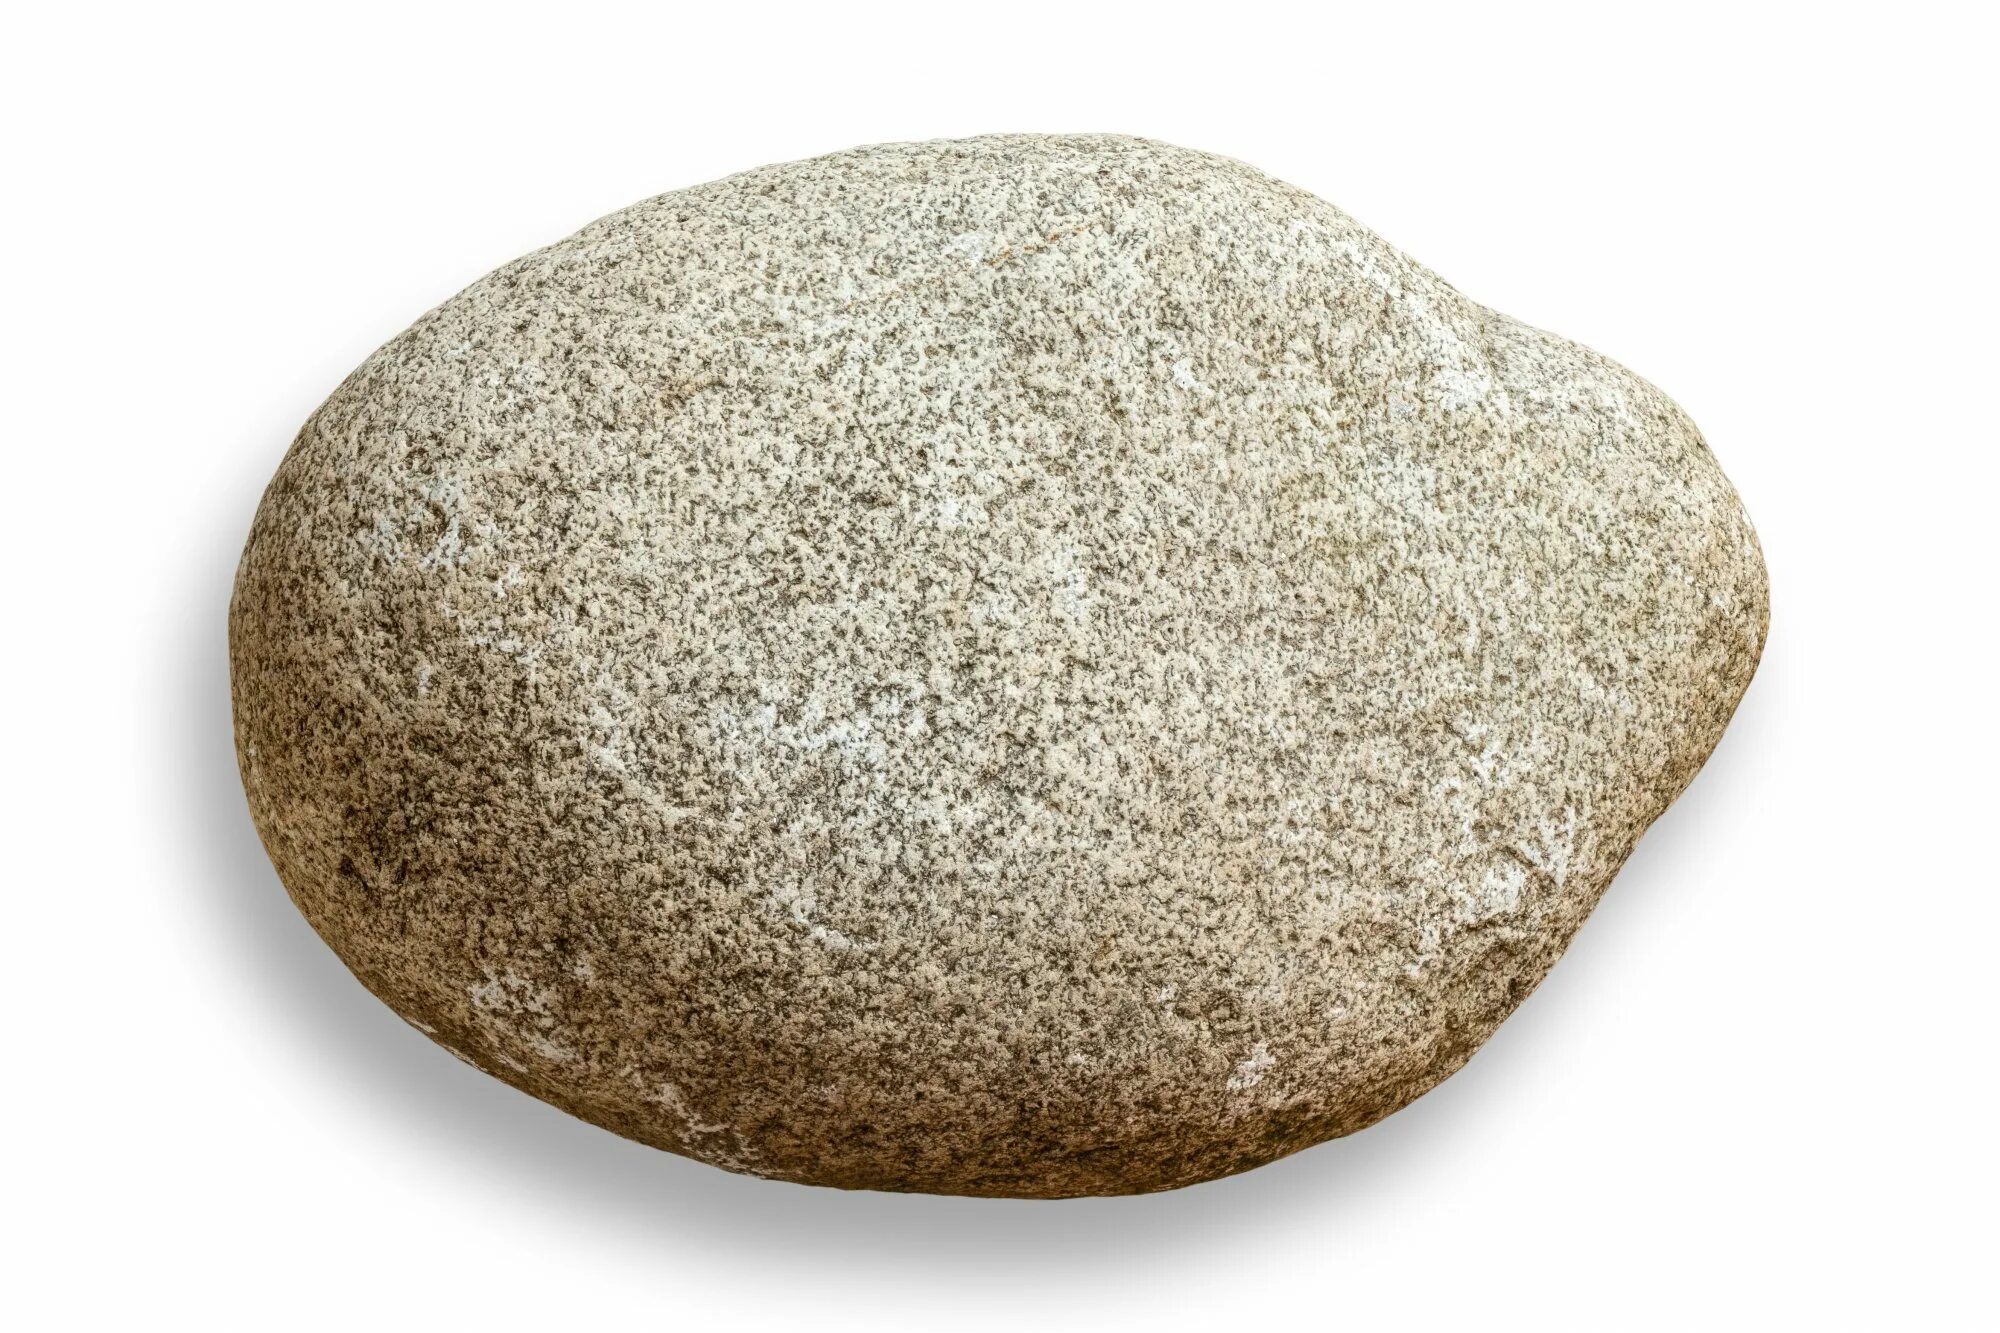 Булыжник на белом фоне. Камень для детей. Круглый плоский камень. Камень булыжник.